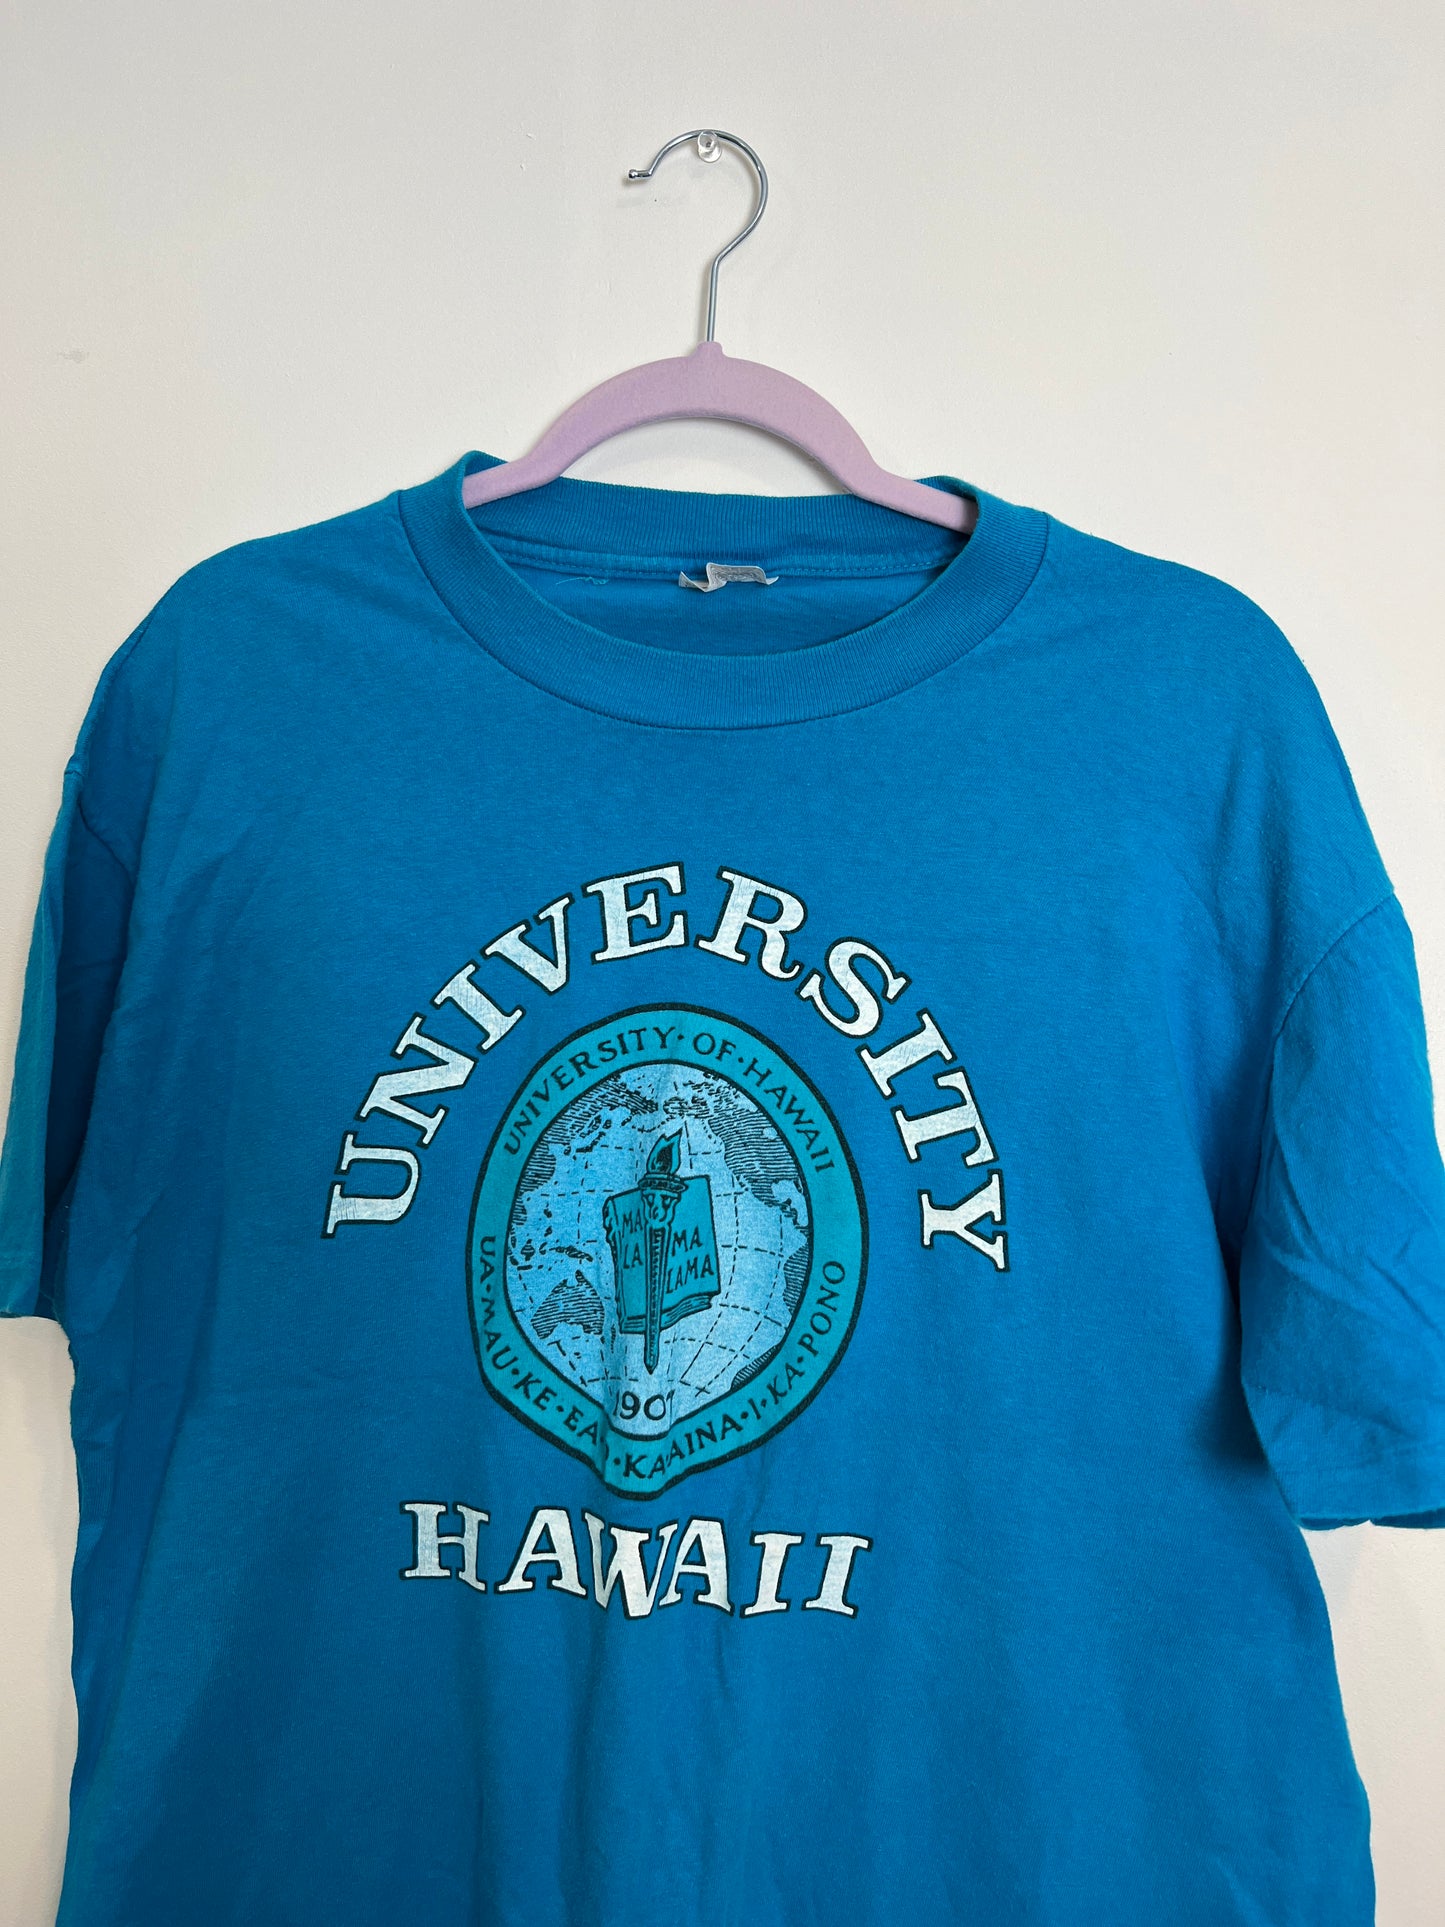 University of Hawaii Tee